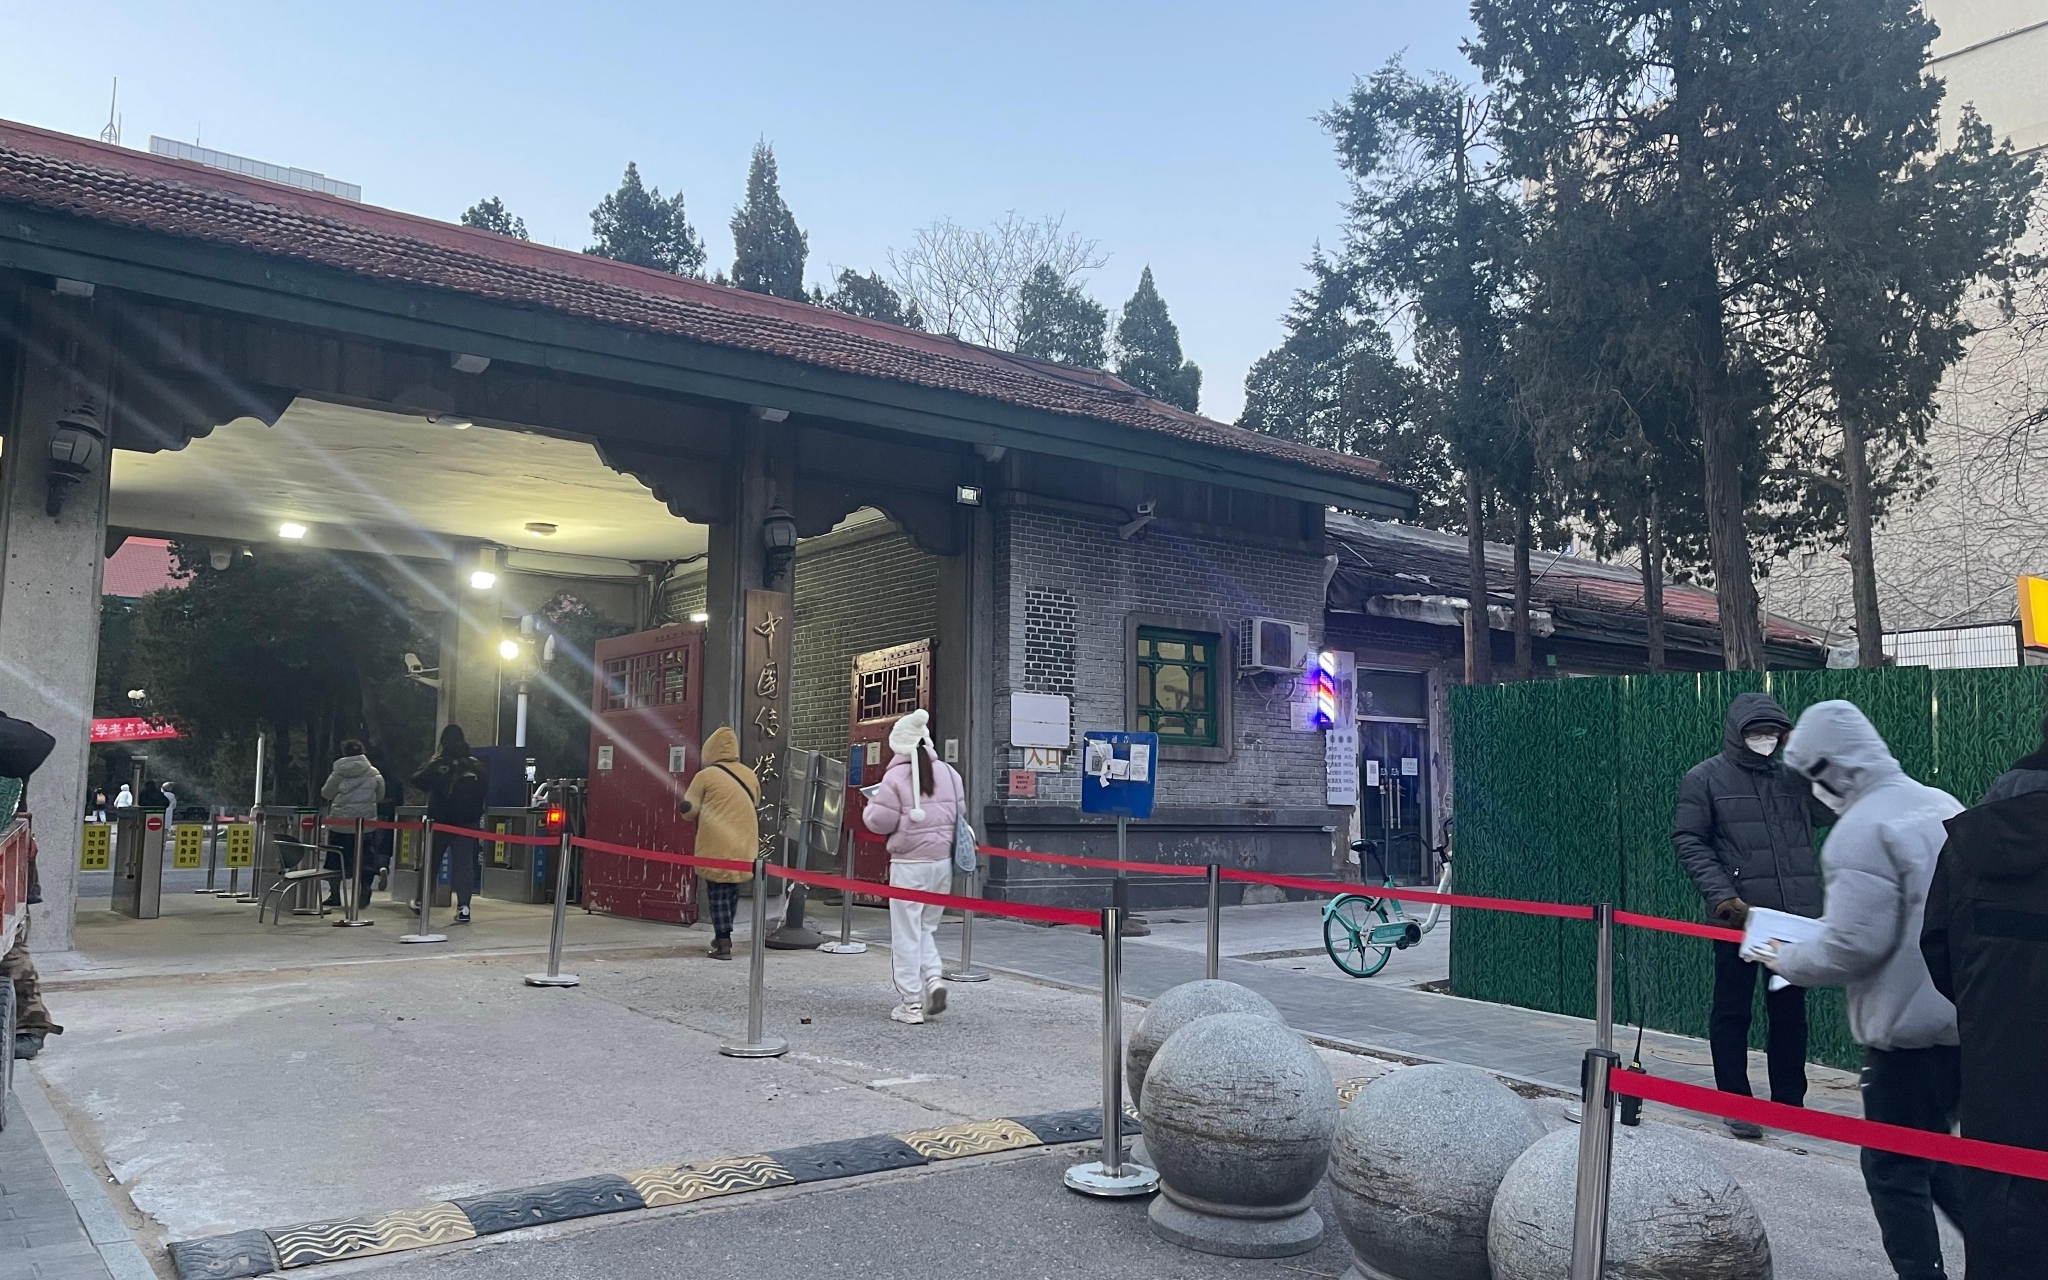 中国传媒大学北门外考生等待入场。 新京报记者刘洋 摄